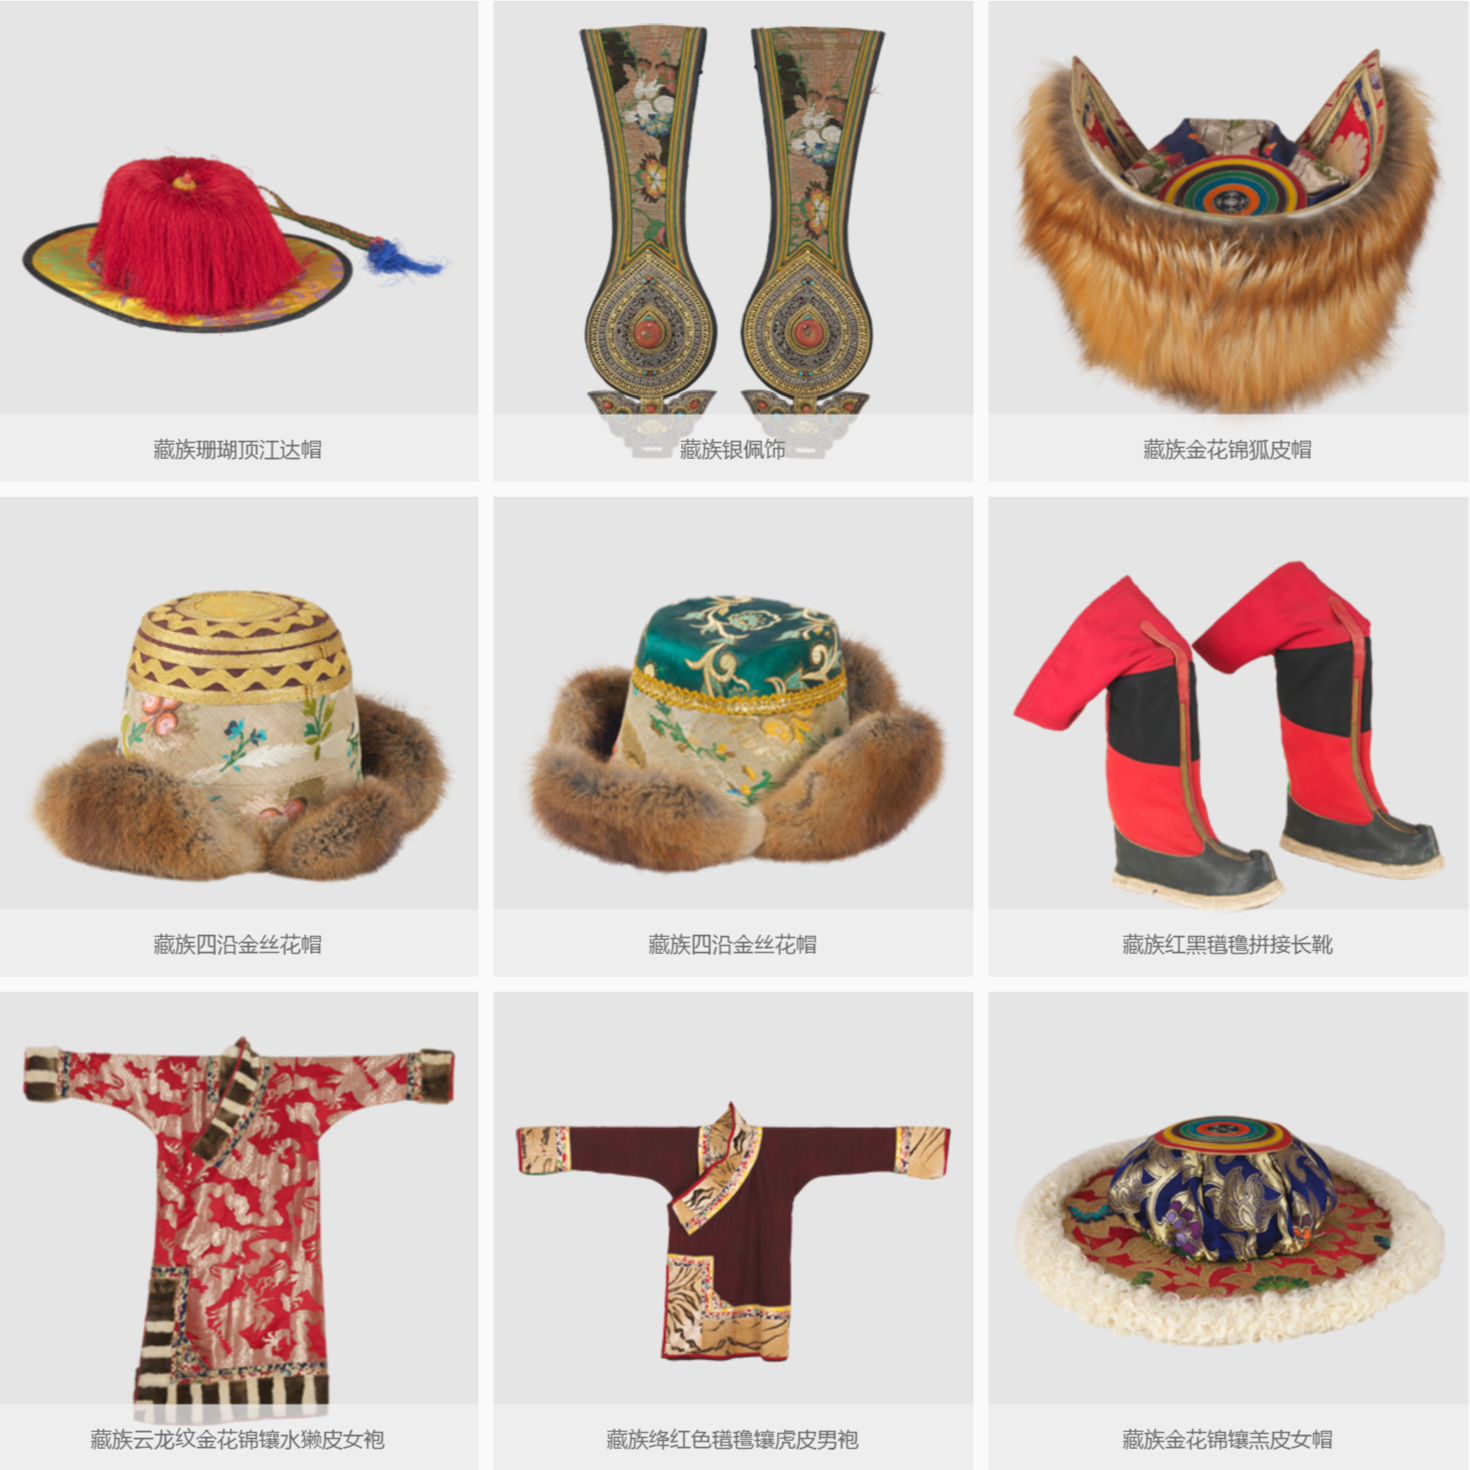 青海藏族服飾具有典型的民族性特點和地域性特點。以整張狐皮製成的狐皮帽，就是牧區藏族人相互認同的重要符號。-三江源地区文化-图片